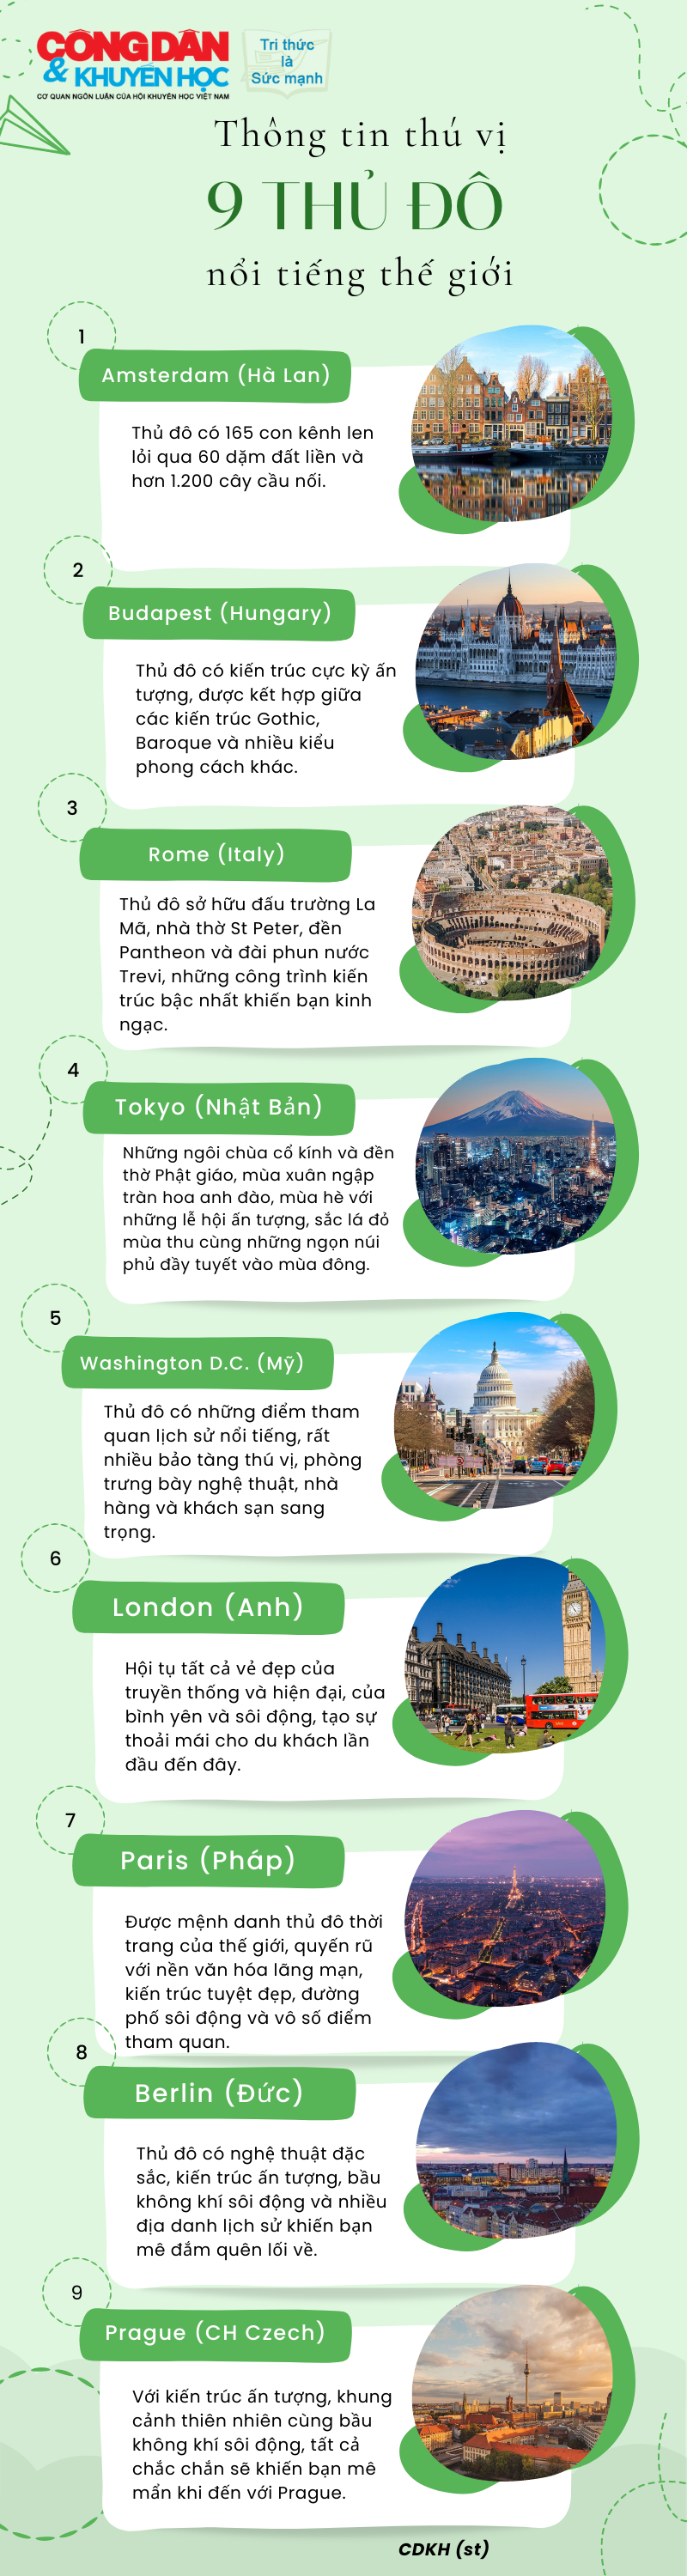 Những phát hiện thú vị về 9 thủ đô nổi tiếng thế giới  - Ảnh 1.